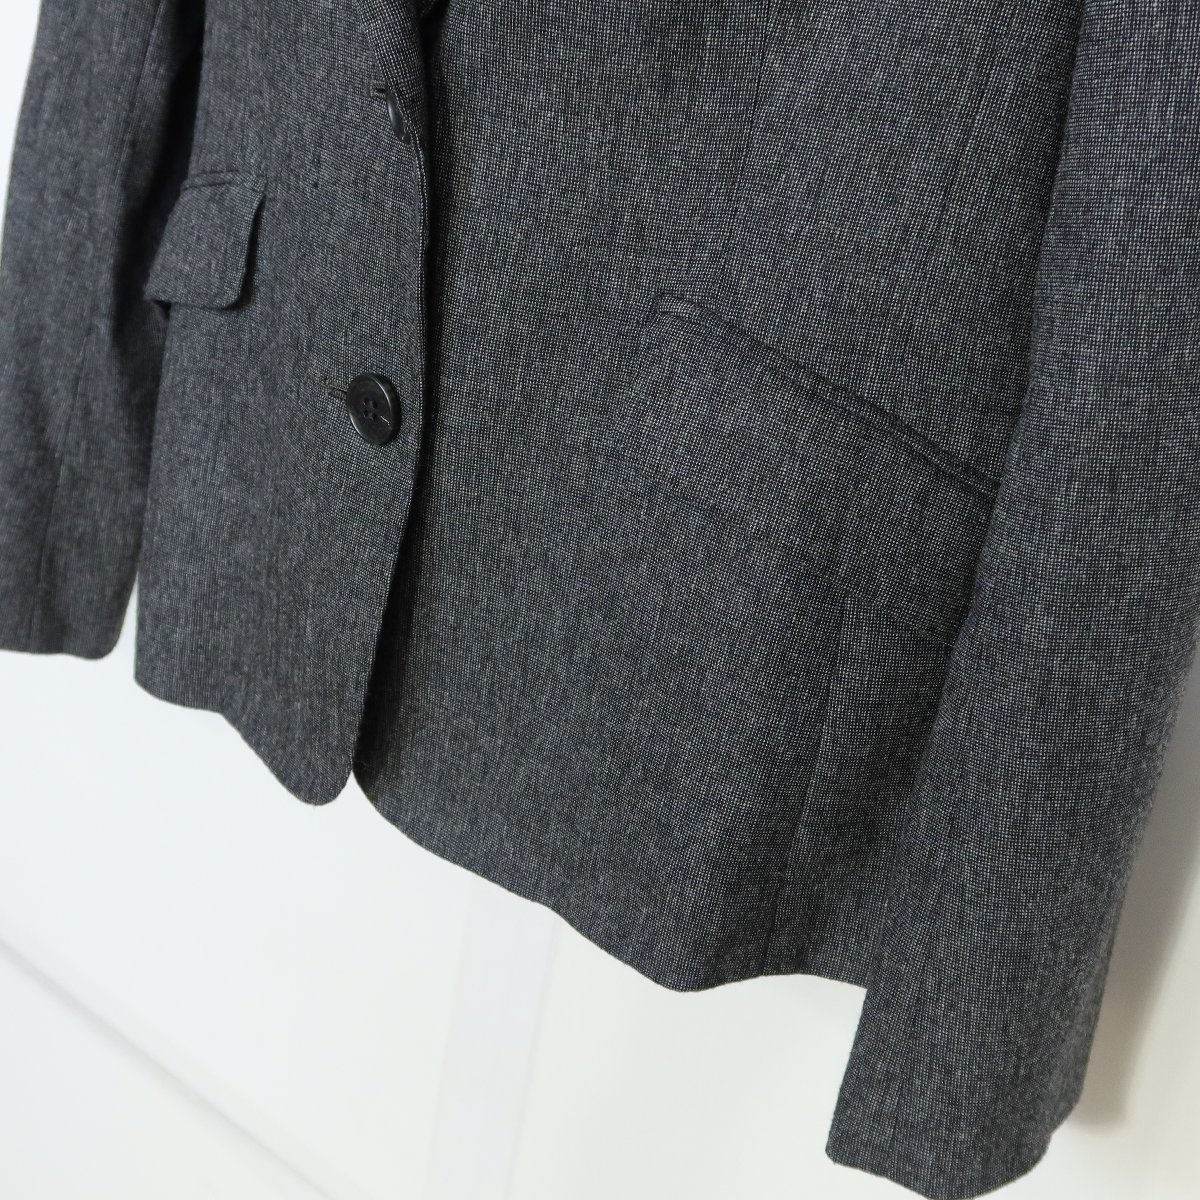 キース★スーツ テーラードジャケット&スカート 大きいサイズ42 ストレッチ素材 ウール混 濃いグレー系 z5839_画像3